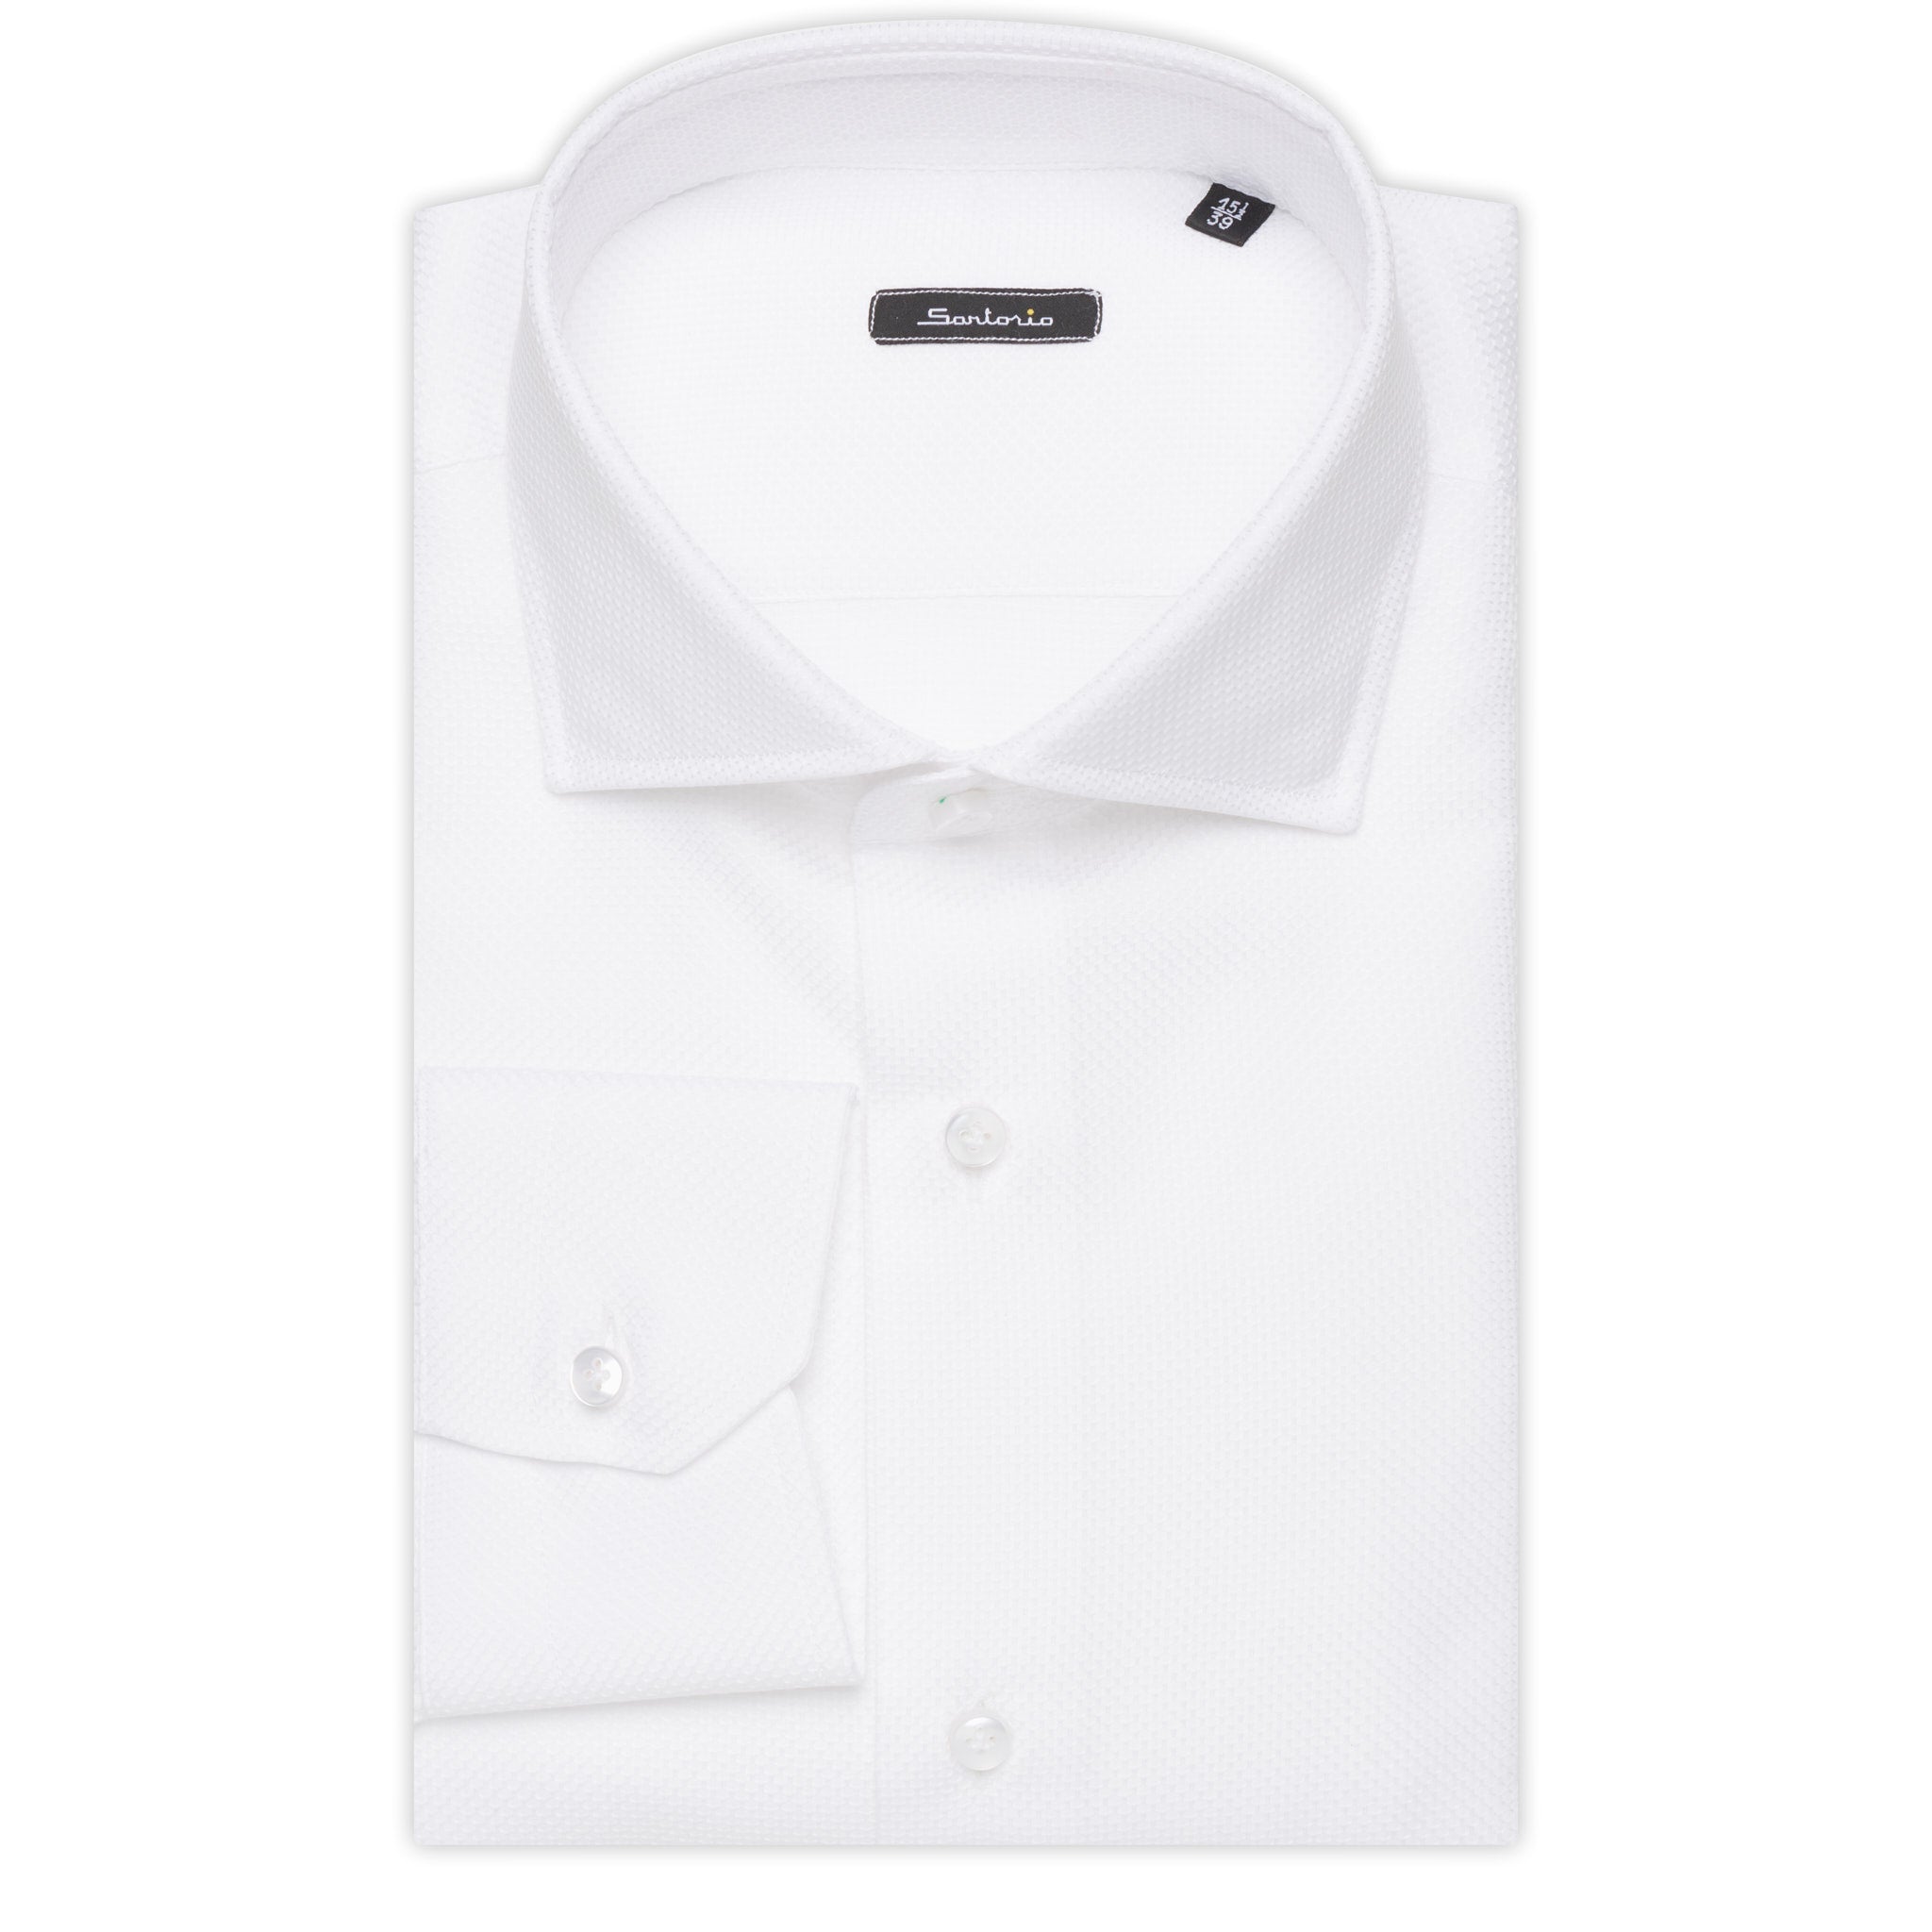 SARTORIO Napoli by KITON White Dobby Cotton Dress Shirt NEW Slim